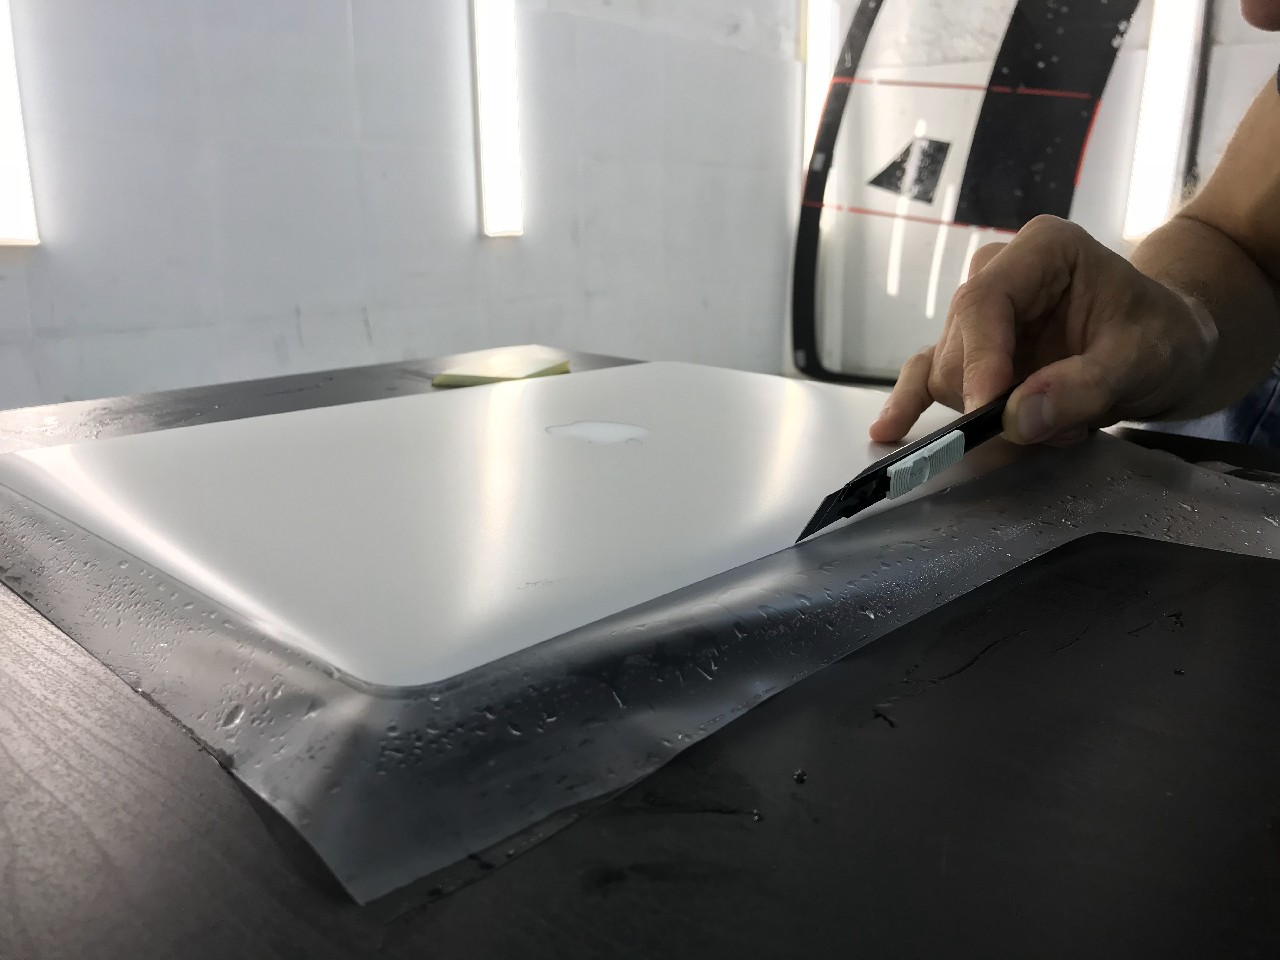 Фото Защитить MacBook Pro матовой пленкой, сделав его вечным!